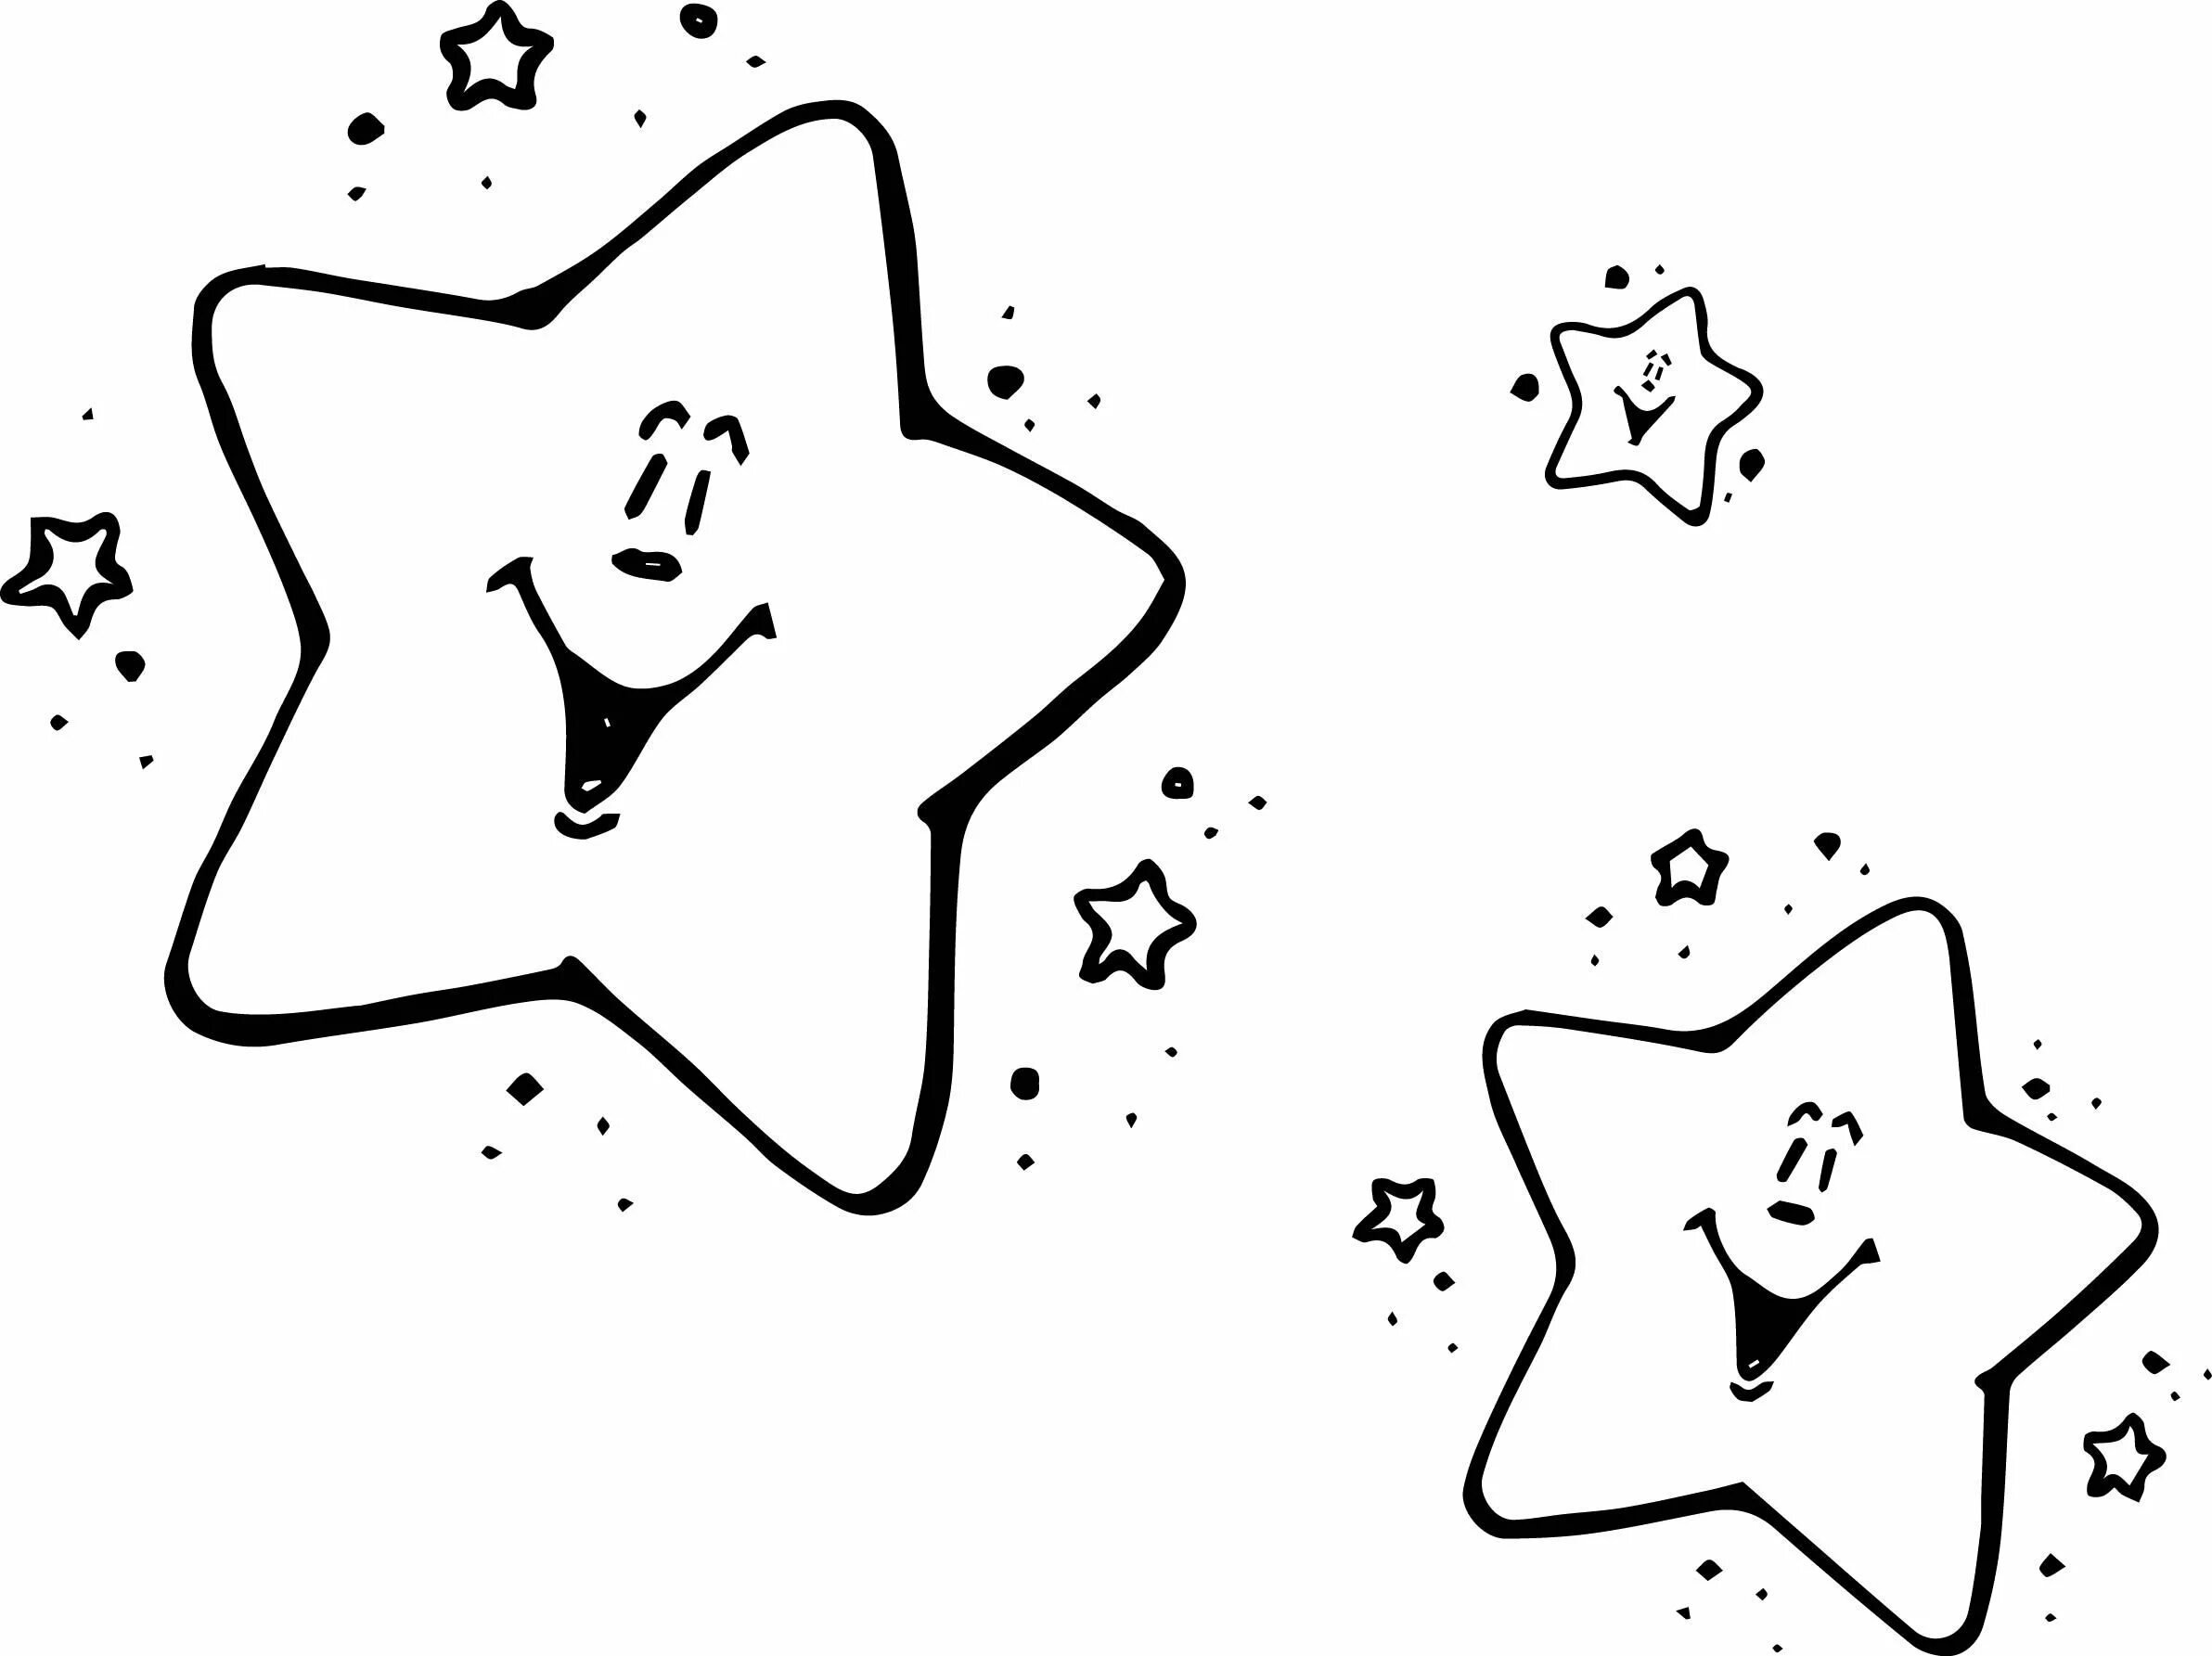 Звезда раскраска. Раскраска Звездочка. Звездочка раскраска для детей. Звезда раскраска для детей. Космическая звезда картинка для детей